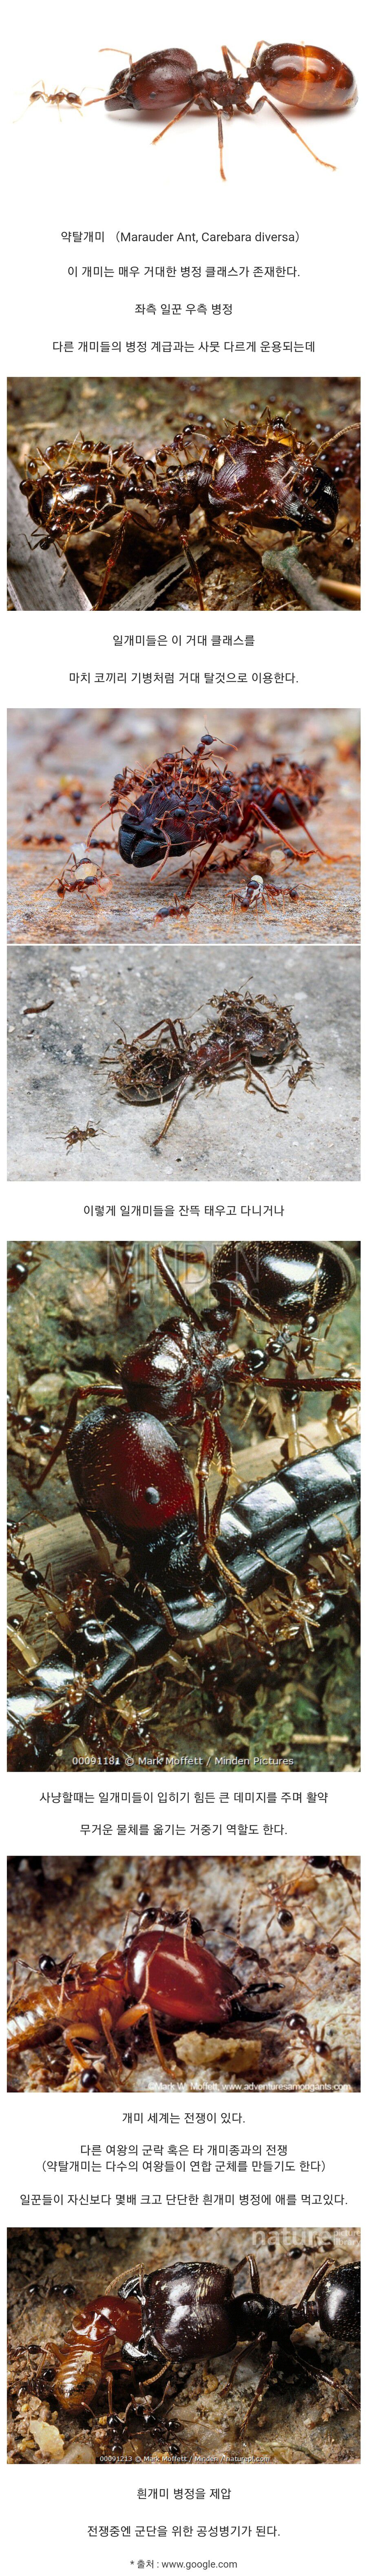 거대 클래스를 운용하는 개미.jpg